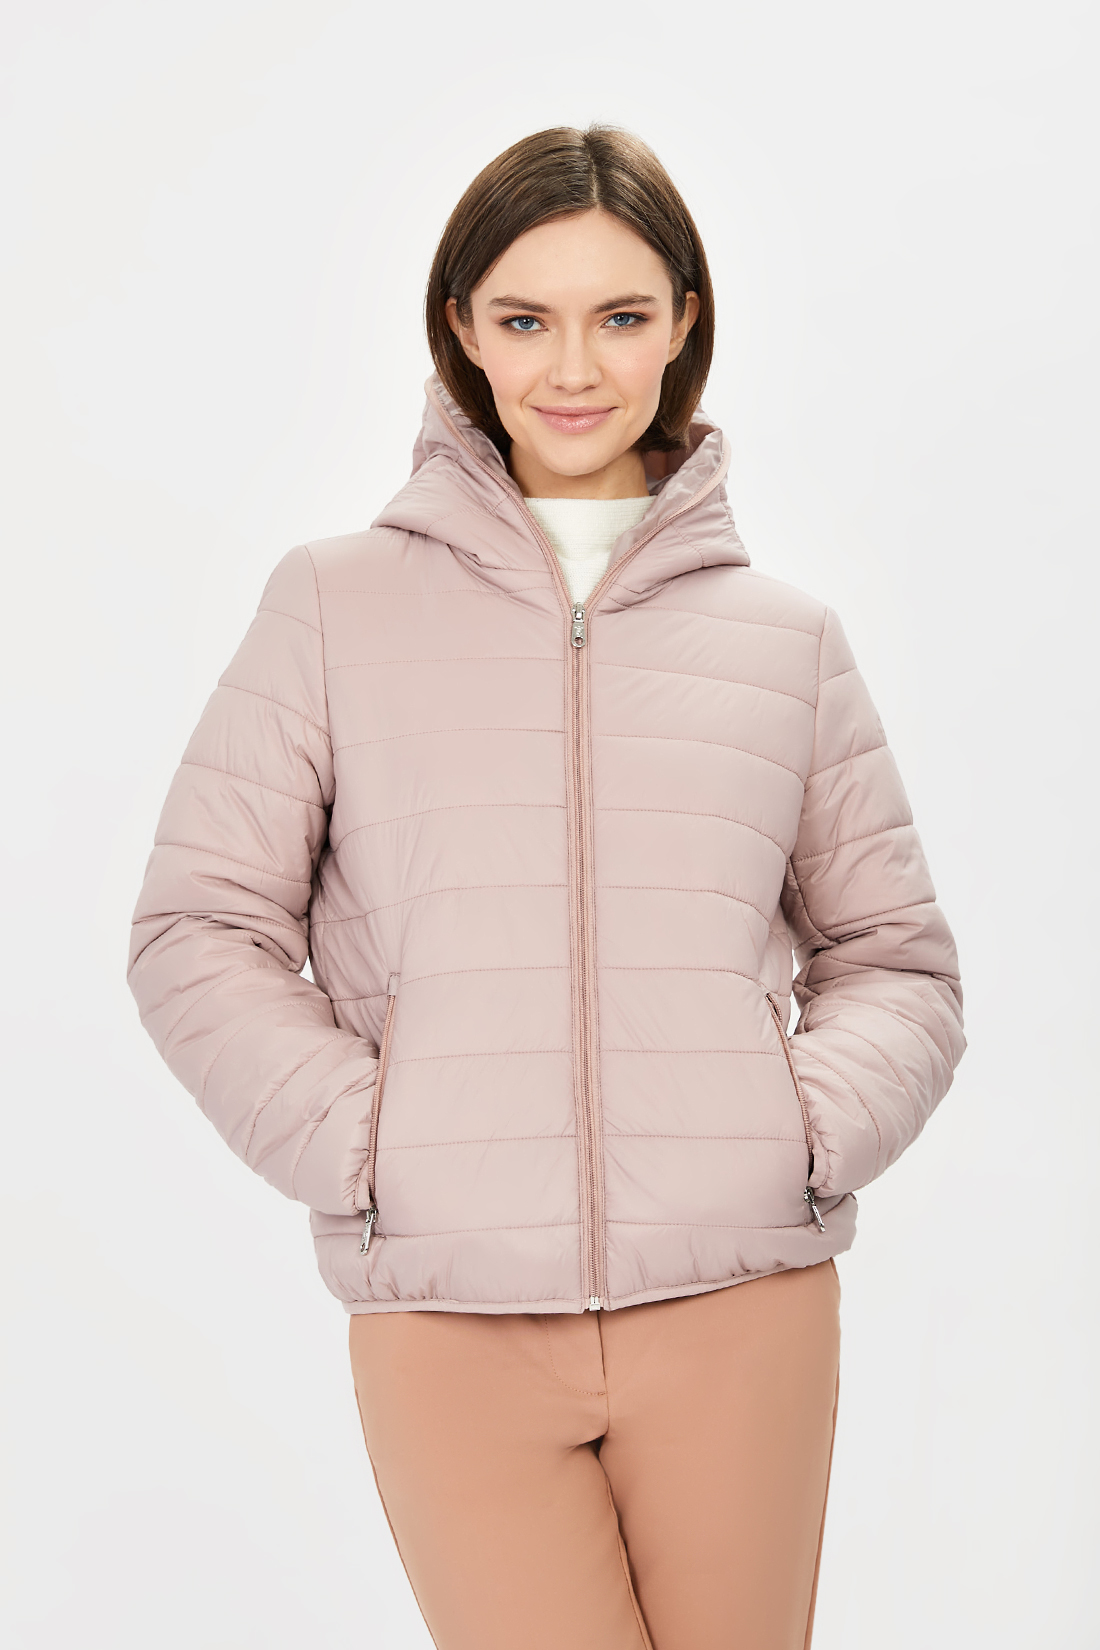 Куртка (арт. baon B031206), размер XXL, цвет розовый Куртка (арт. baon B031206) - фото 1